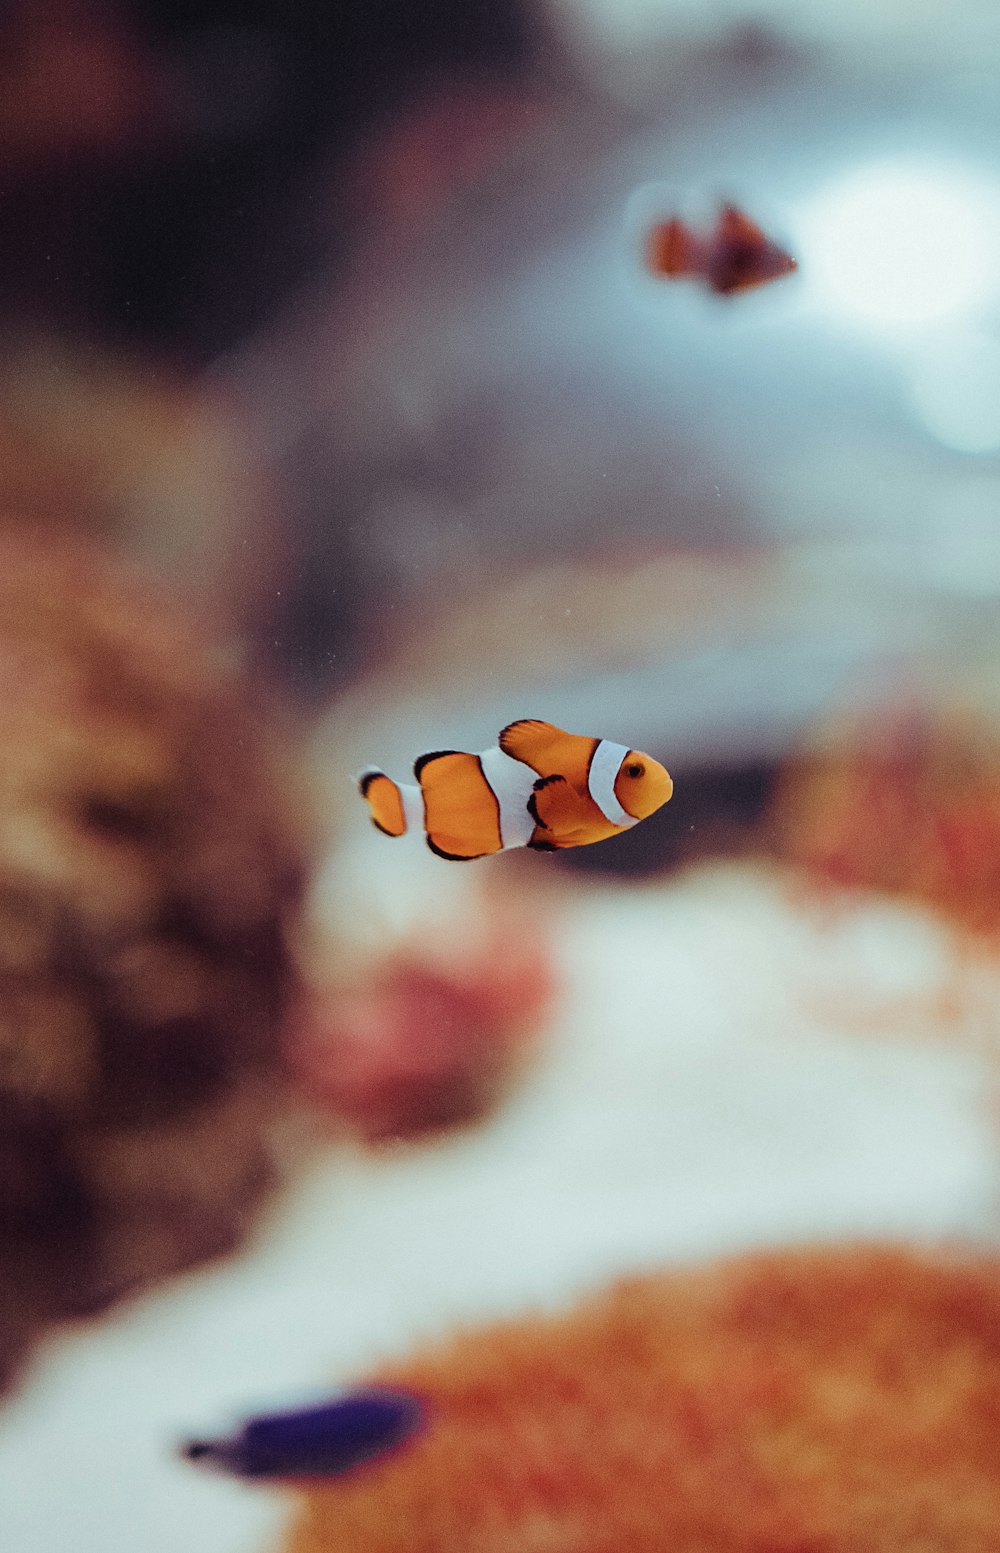 an orange and white clown fish swimming in an aquarium